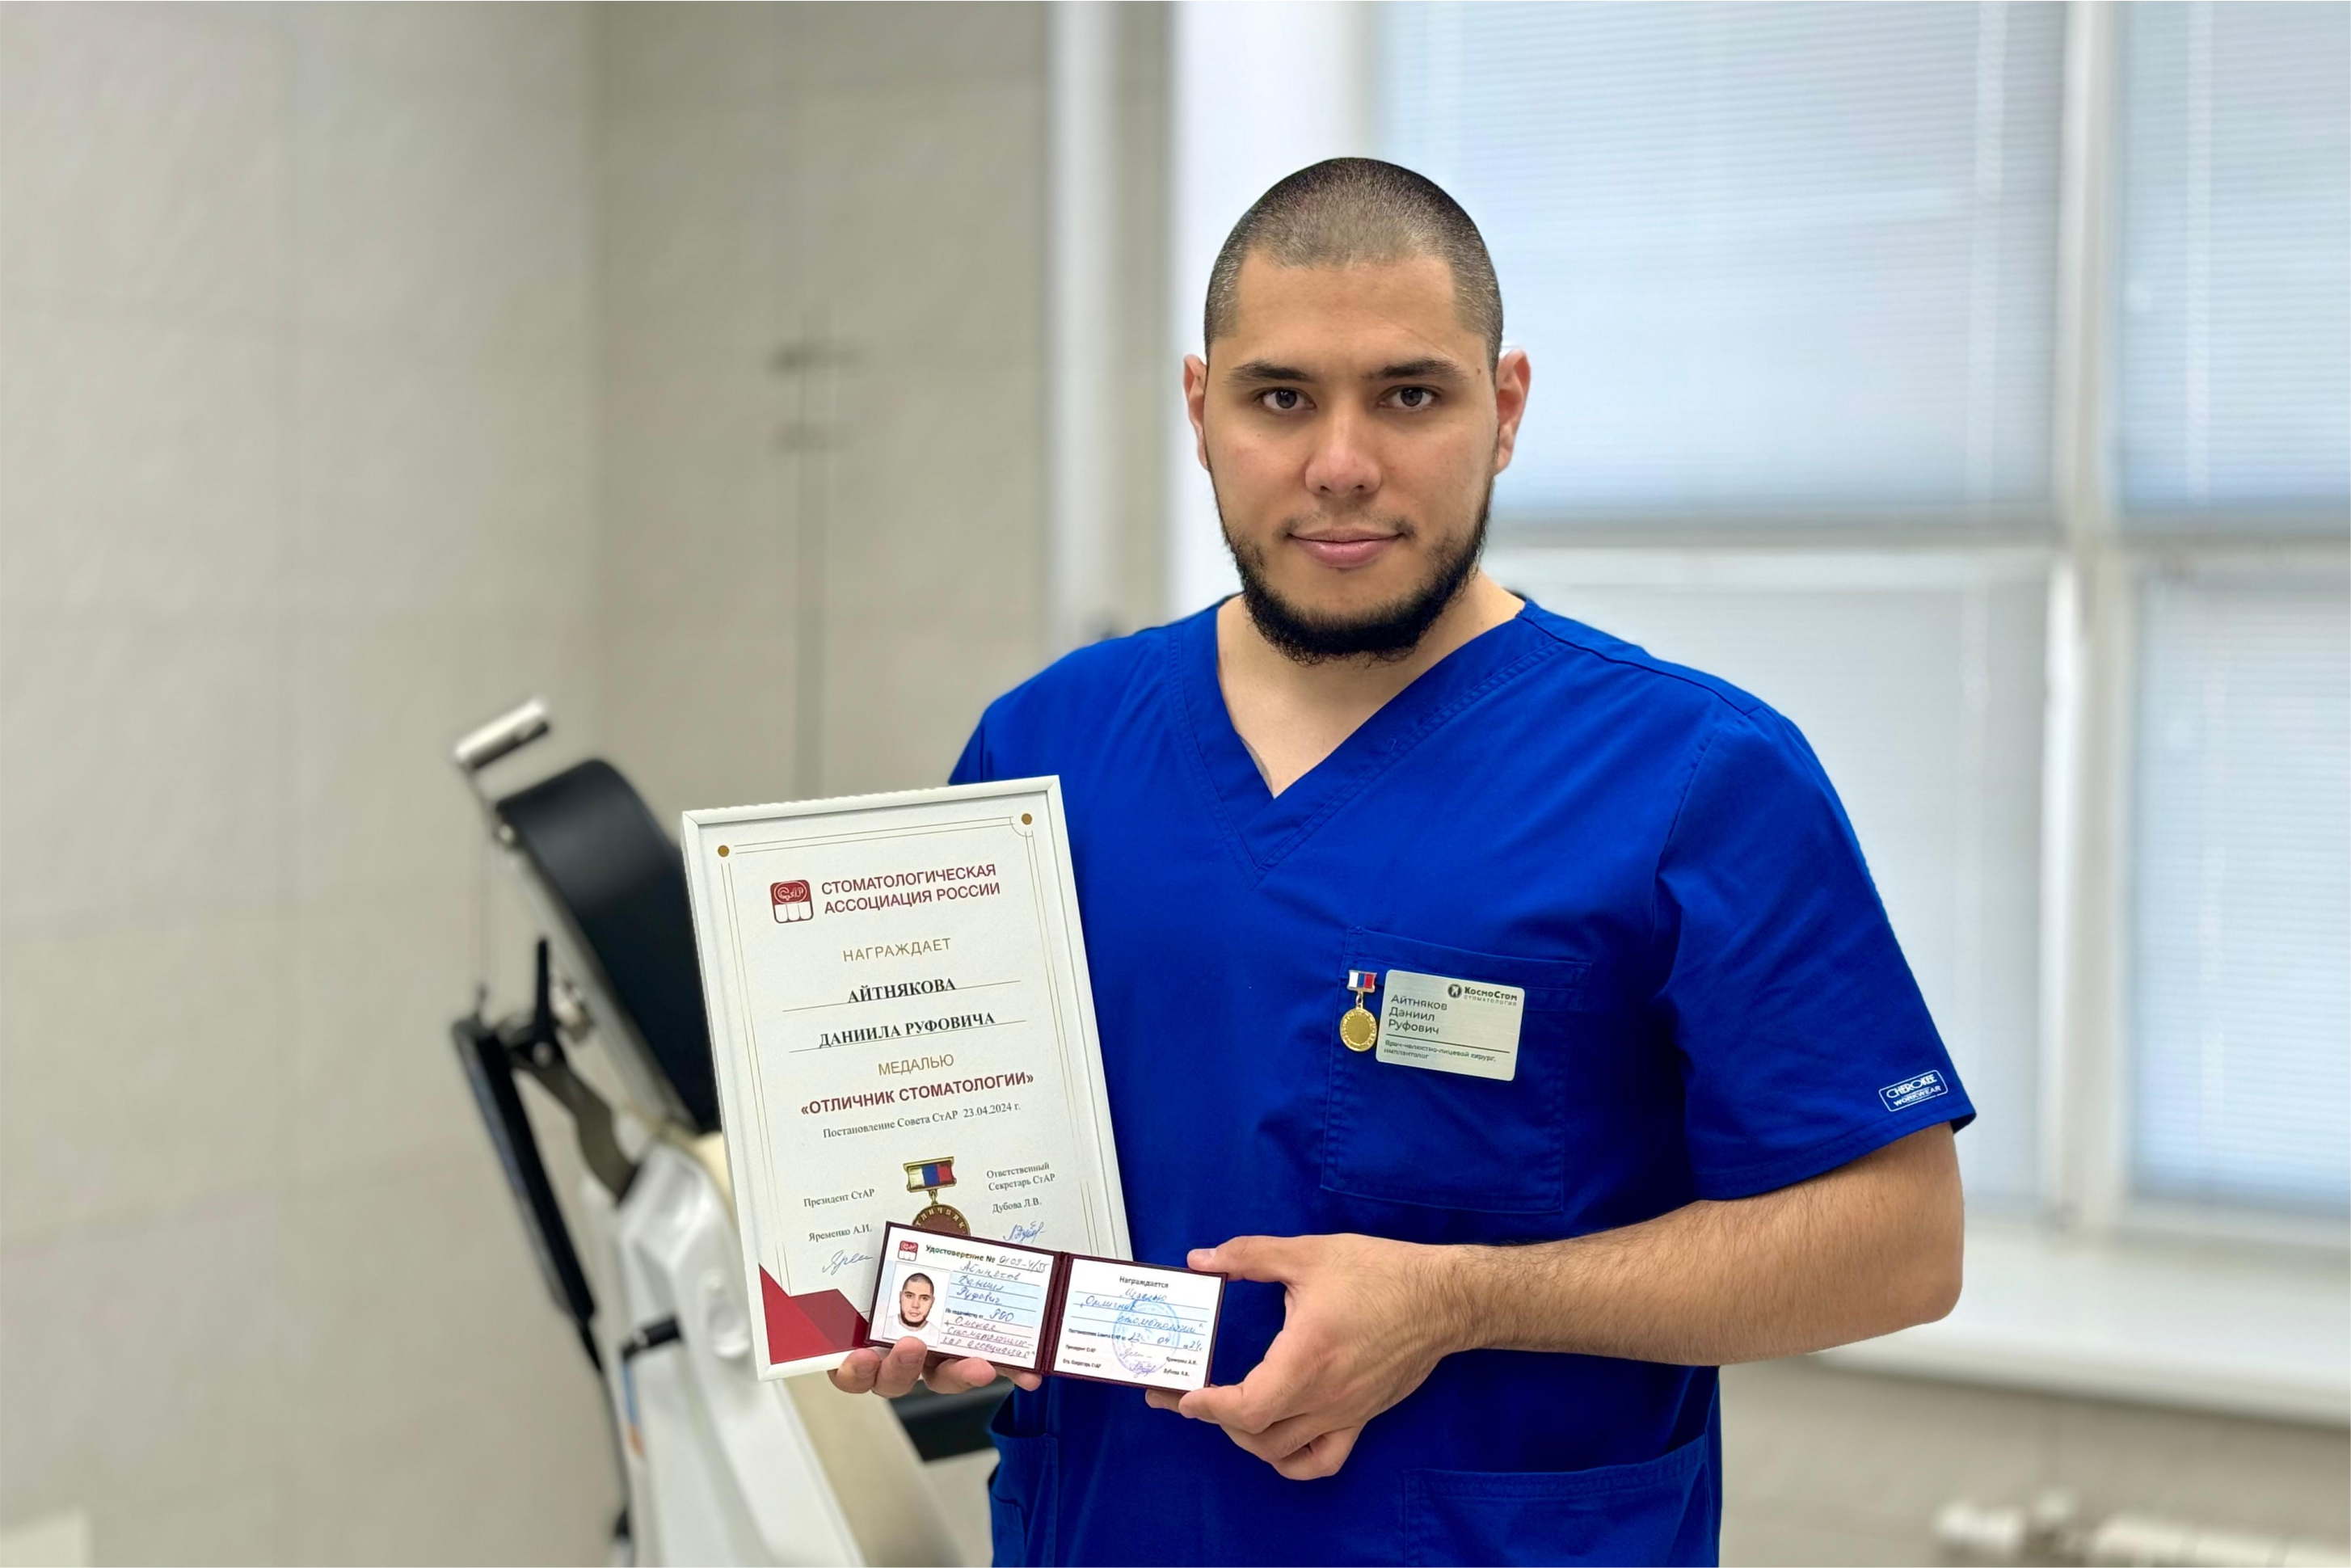 Челюстно-лицевой хирург, имплантолог Айтняков Д.Р. награжден медалью "Отличник стоматологии"!